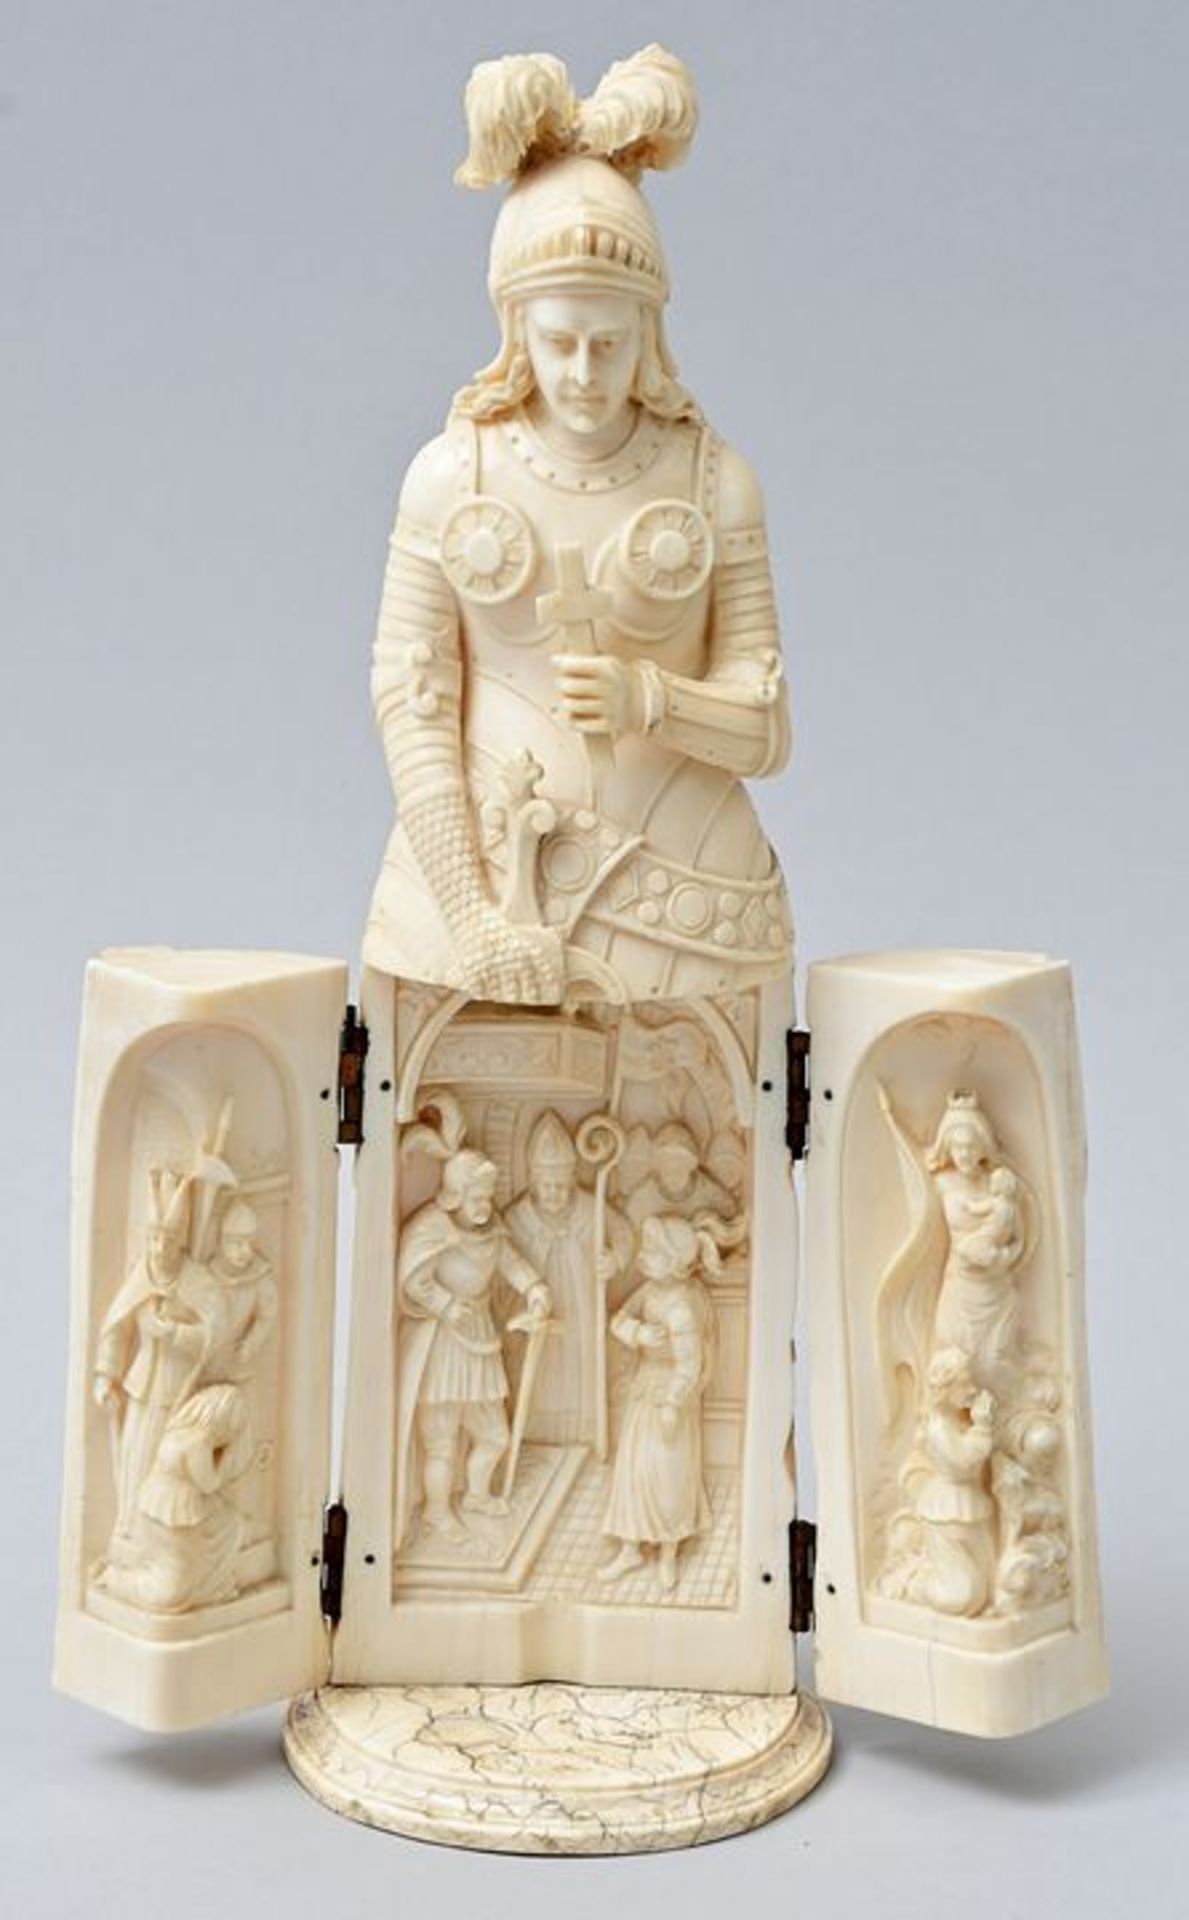 Figur Elfenbein klappbar/ ivory triptych